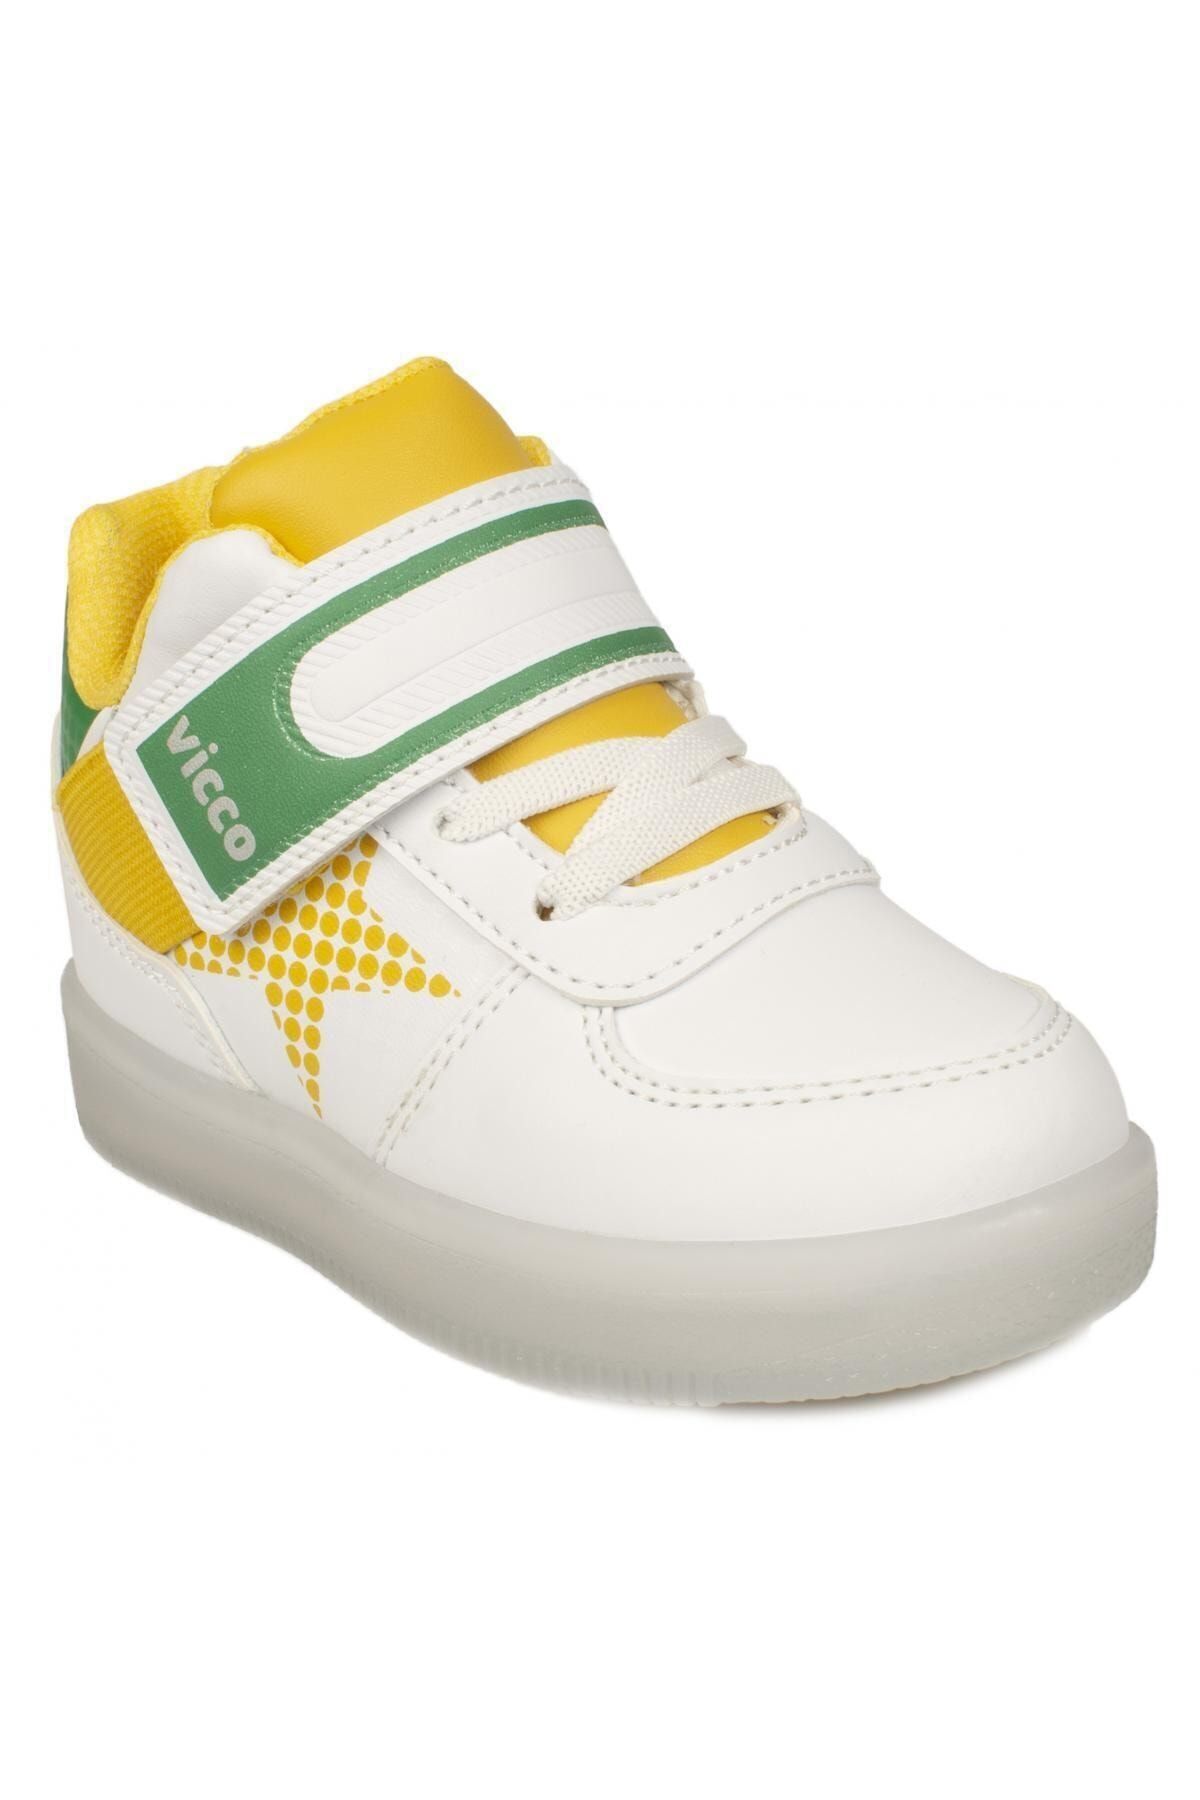 Vicco Unisex Çocuk Beyaz 220.b20k.106 Bebe Işıklı  Spor Sneaker